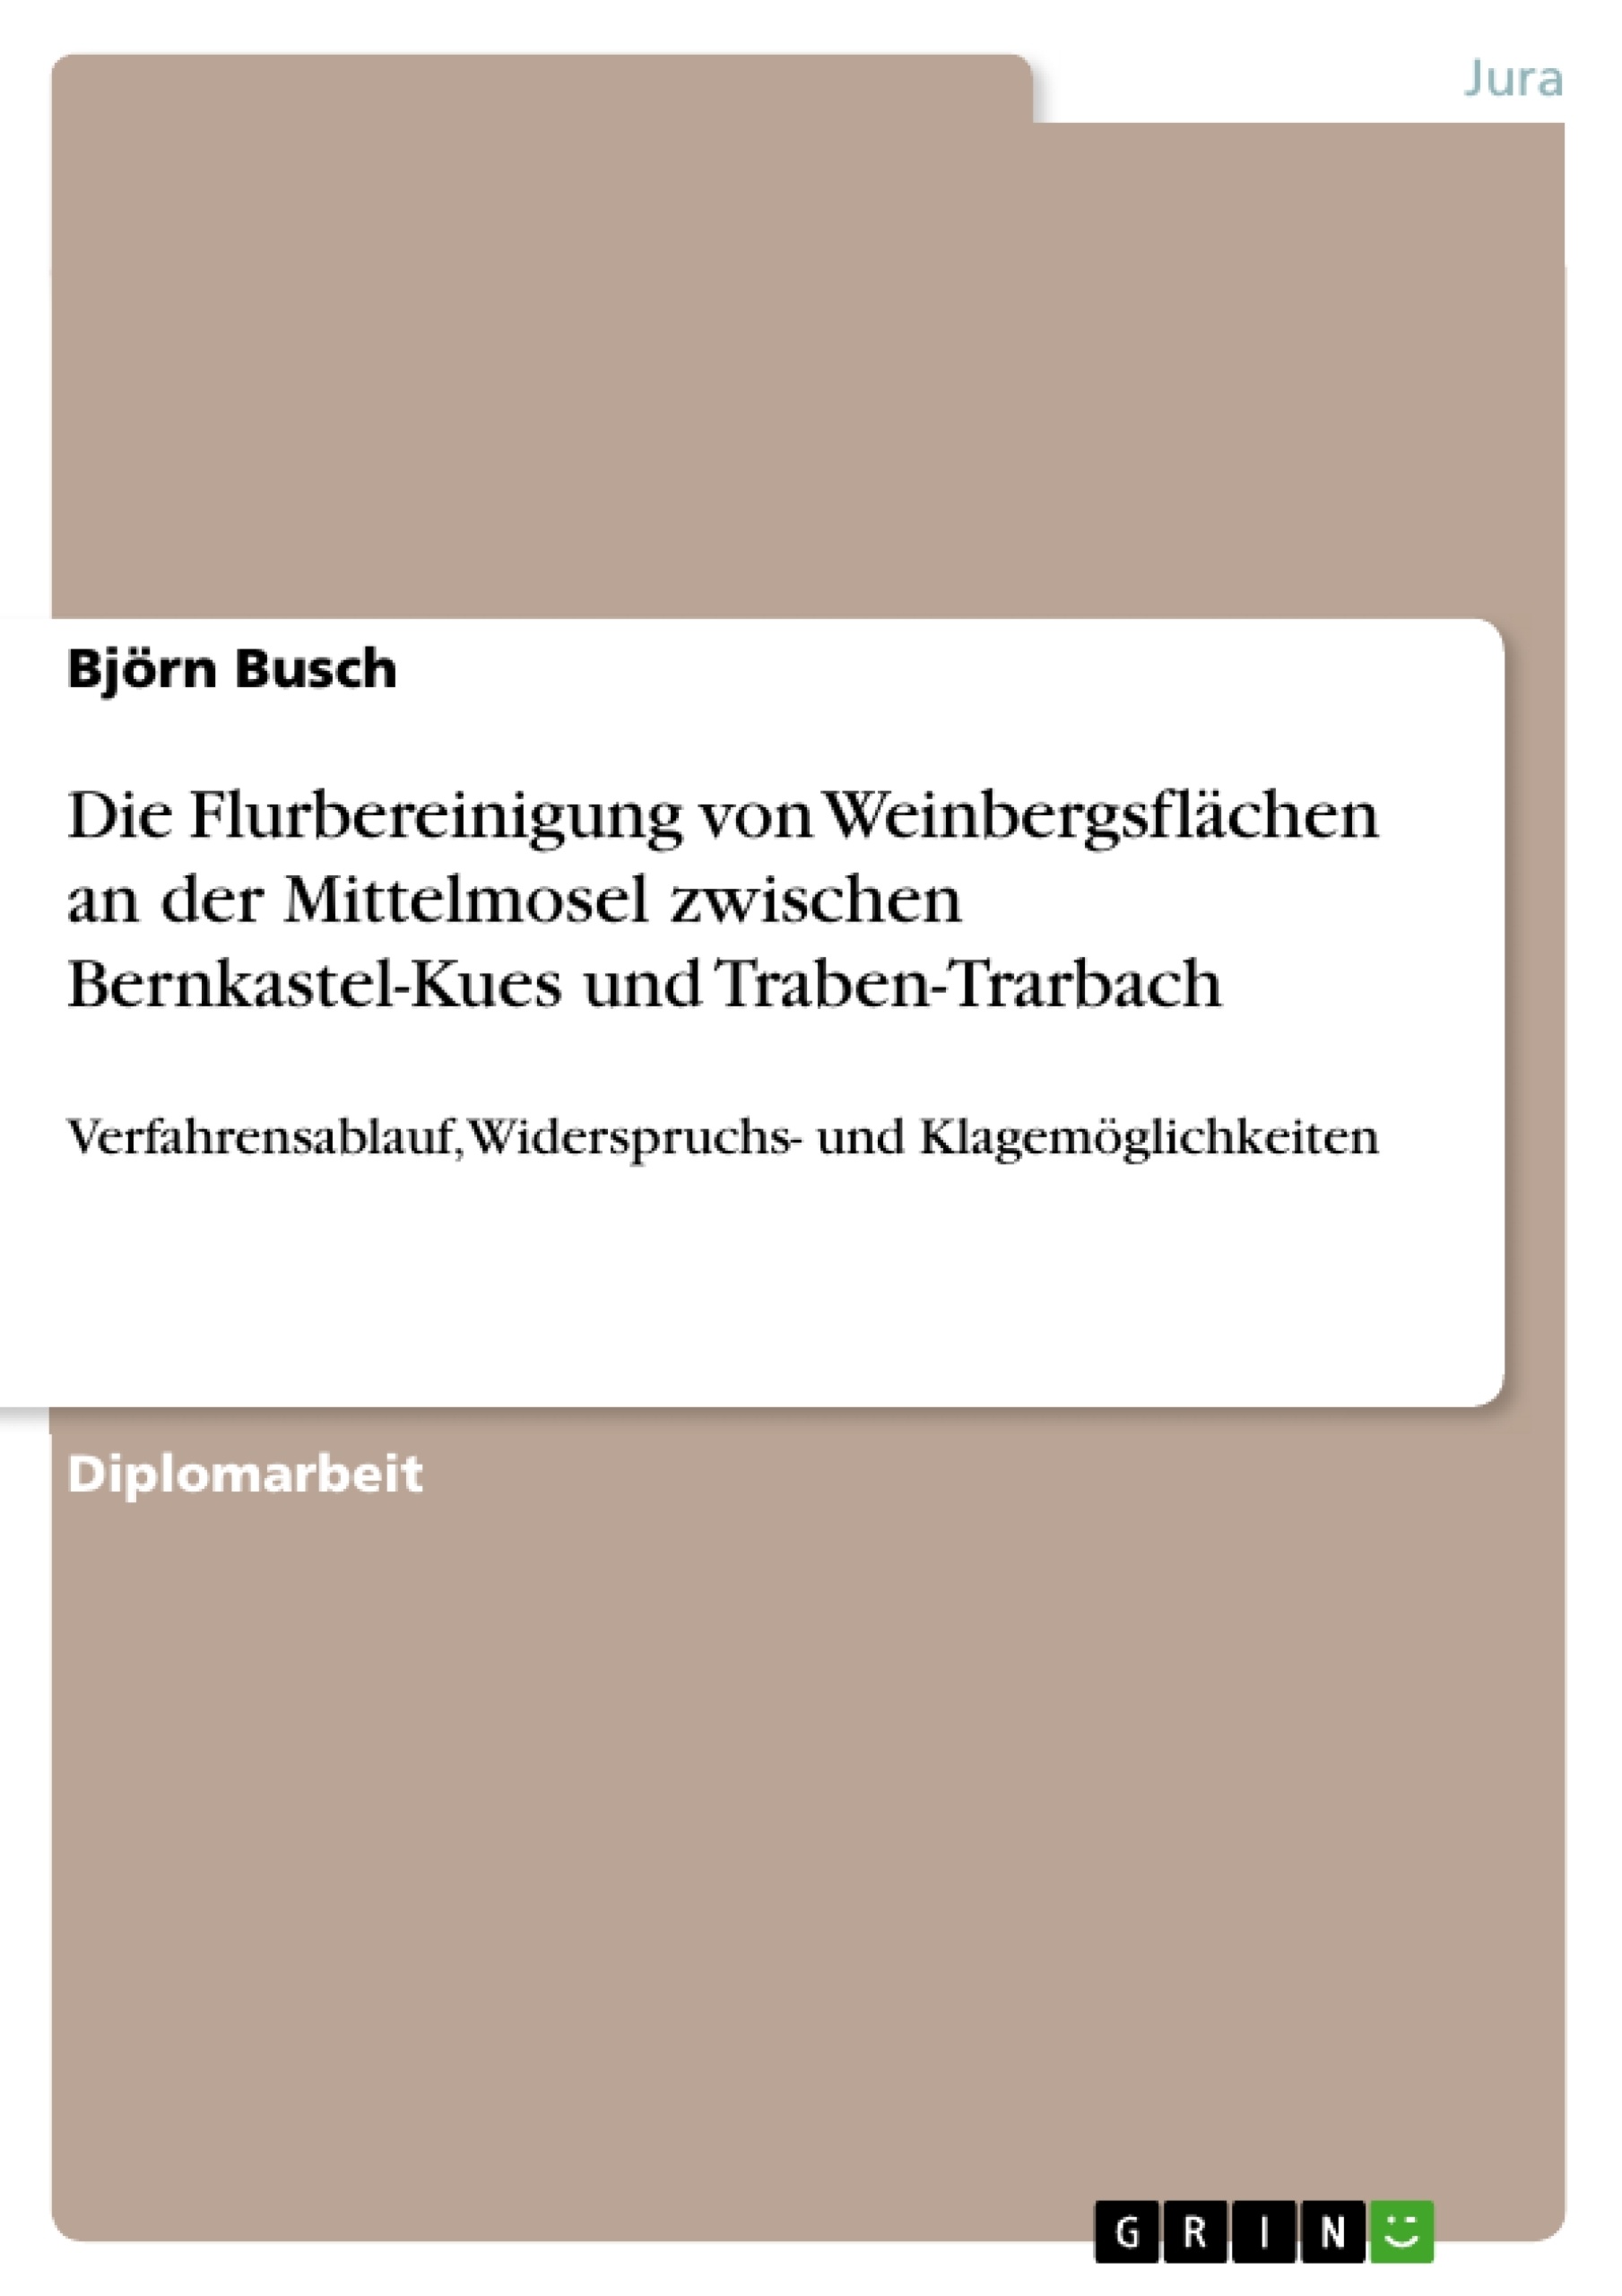 Title: Die Flurbereinigung von Weinbergsflächen an der Mittelmosel zwischen Bernkastel-Kues und Traben-Trarbach